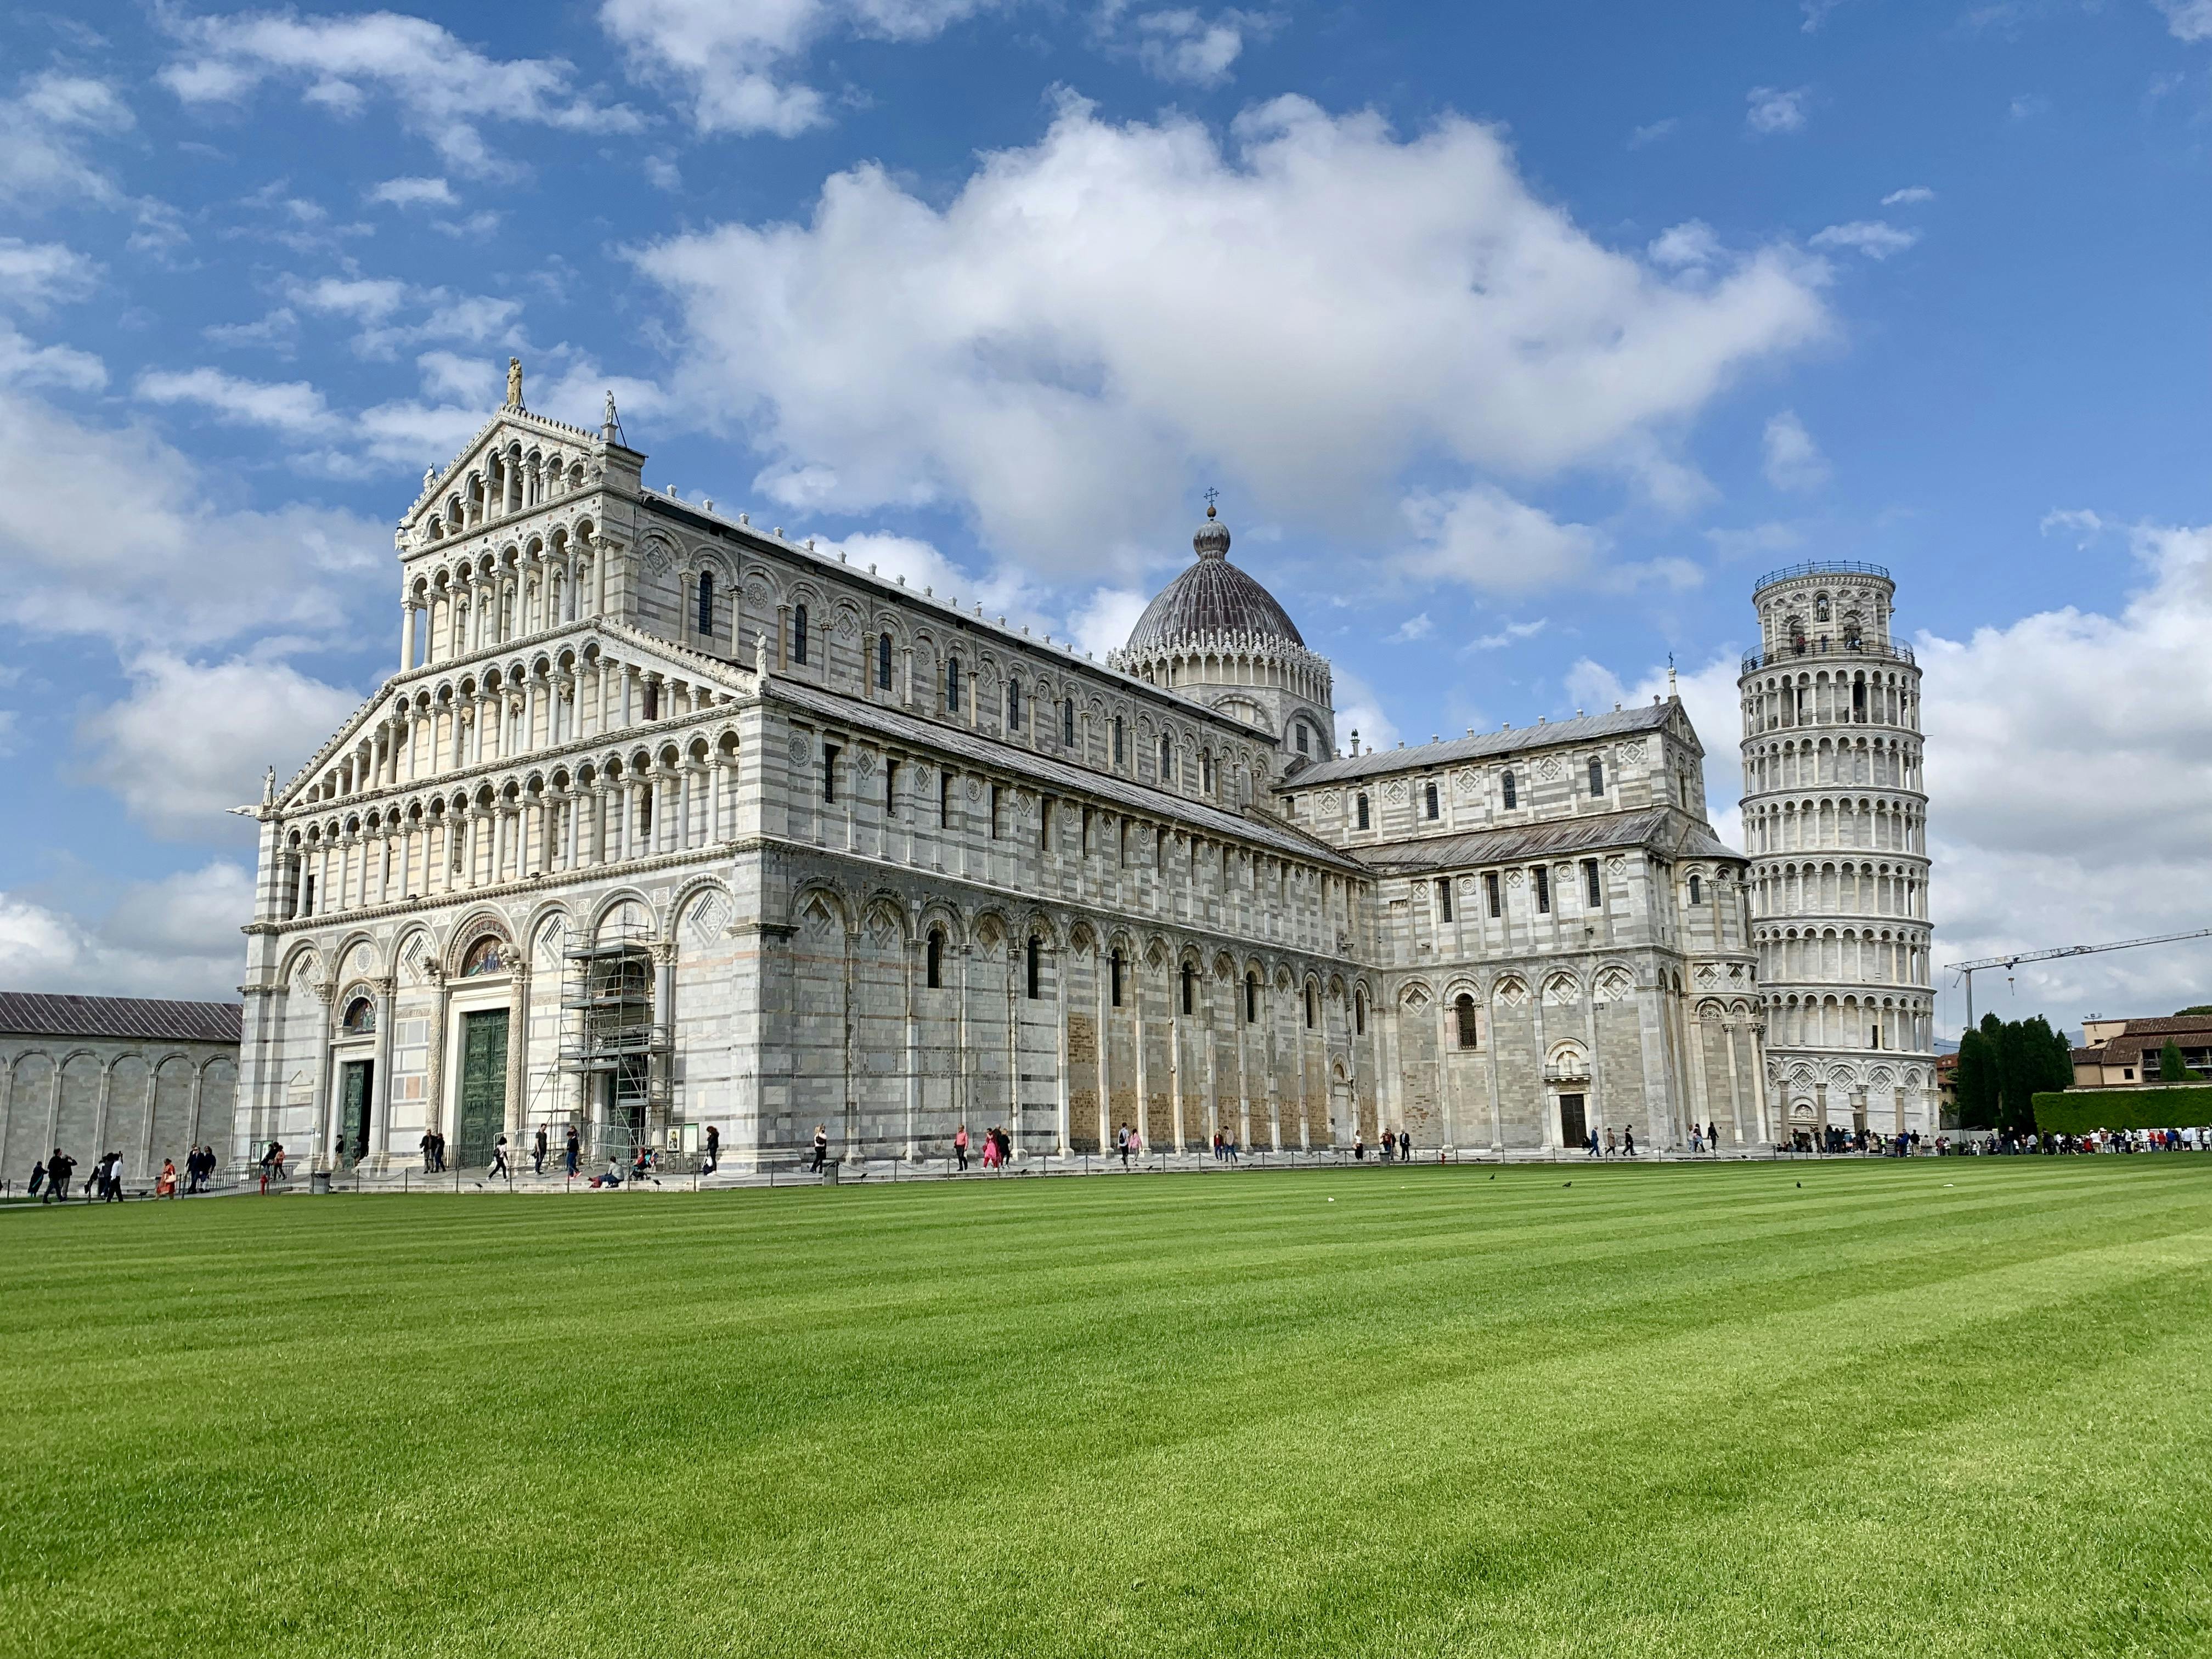 Excursão guiada privada a Pisa e à Torre Inclinada